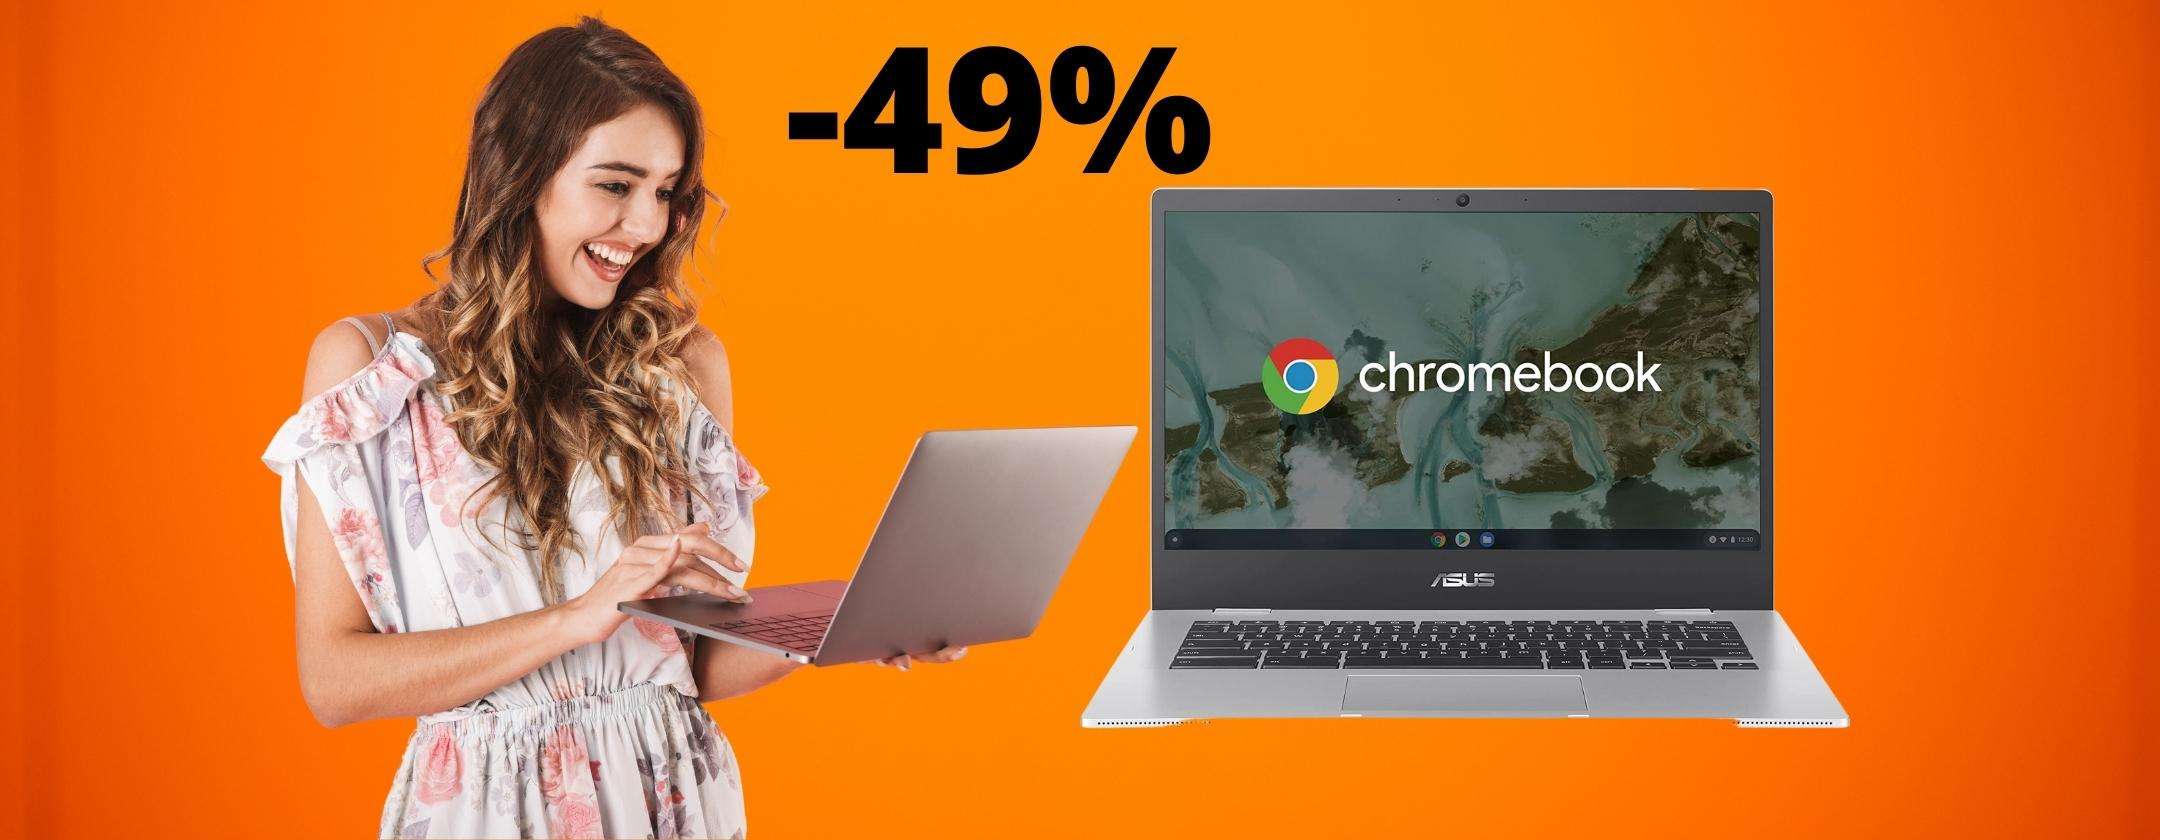 ASUS Chromebook al 49% in MENO su Amazon, INCREDIBILE